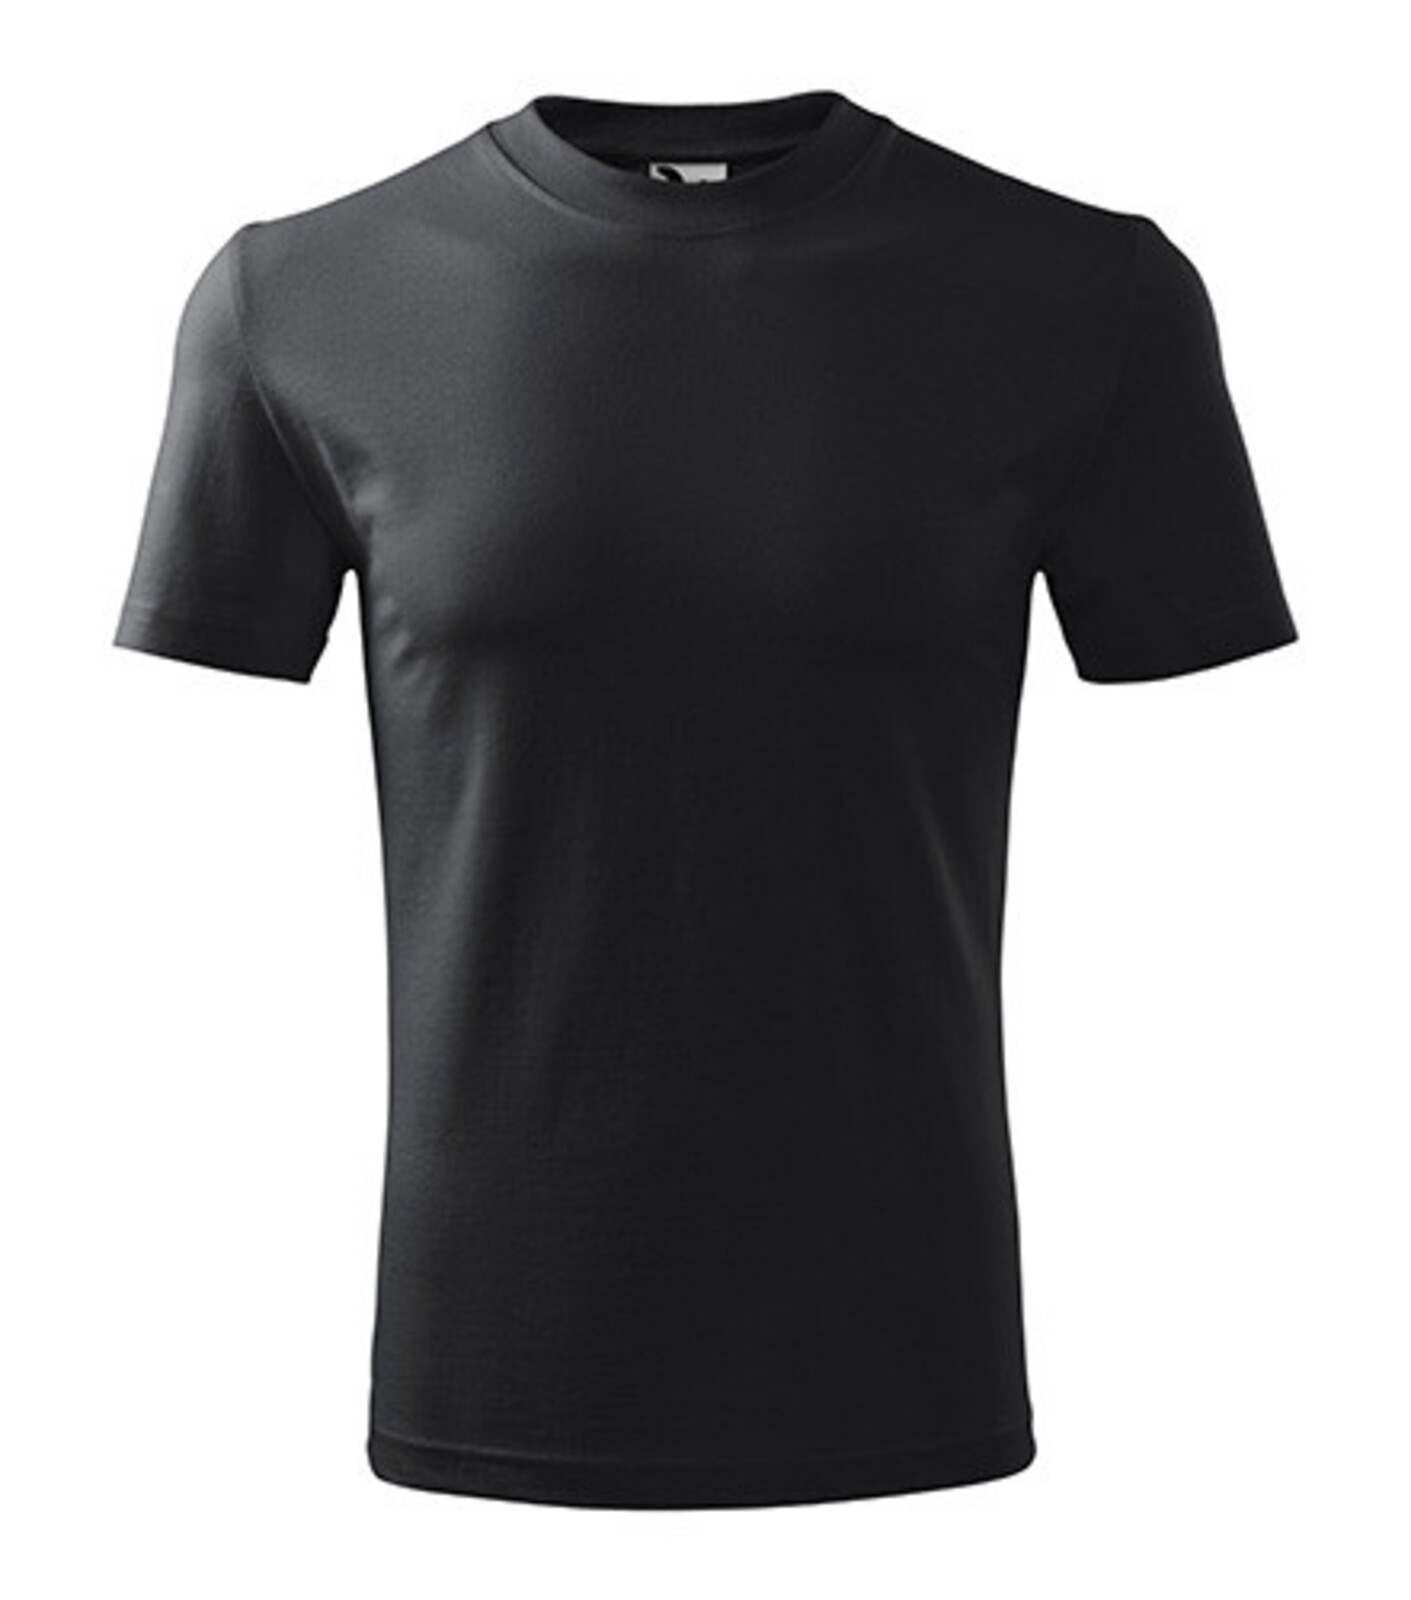 Unisex tričko Malfini Heavy 110 - veľkosť: L, farba: ebony grey